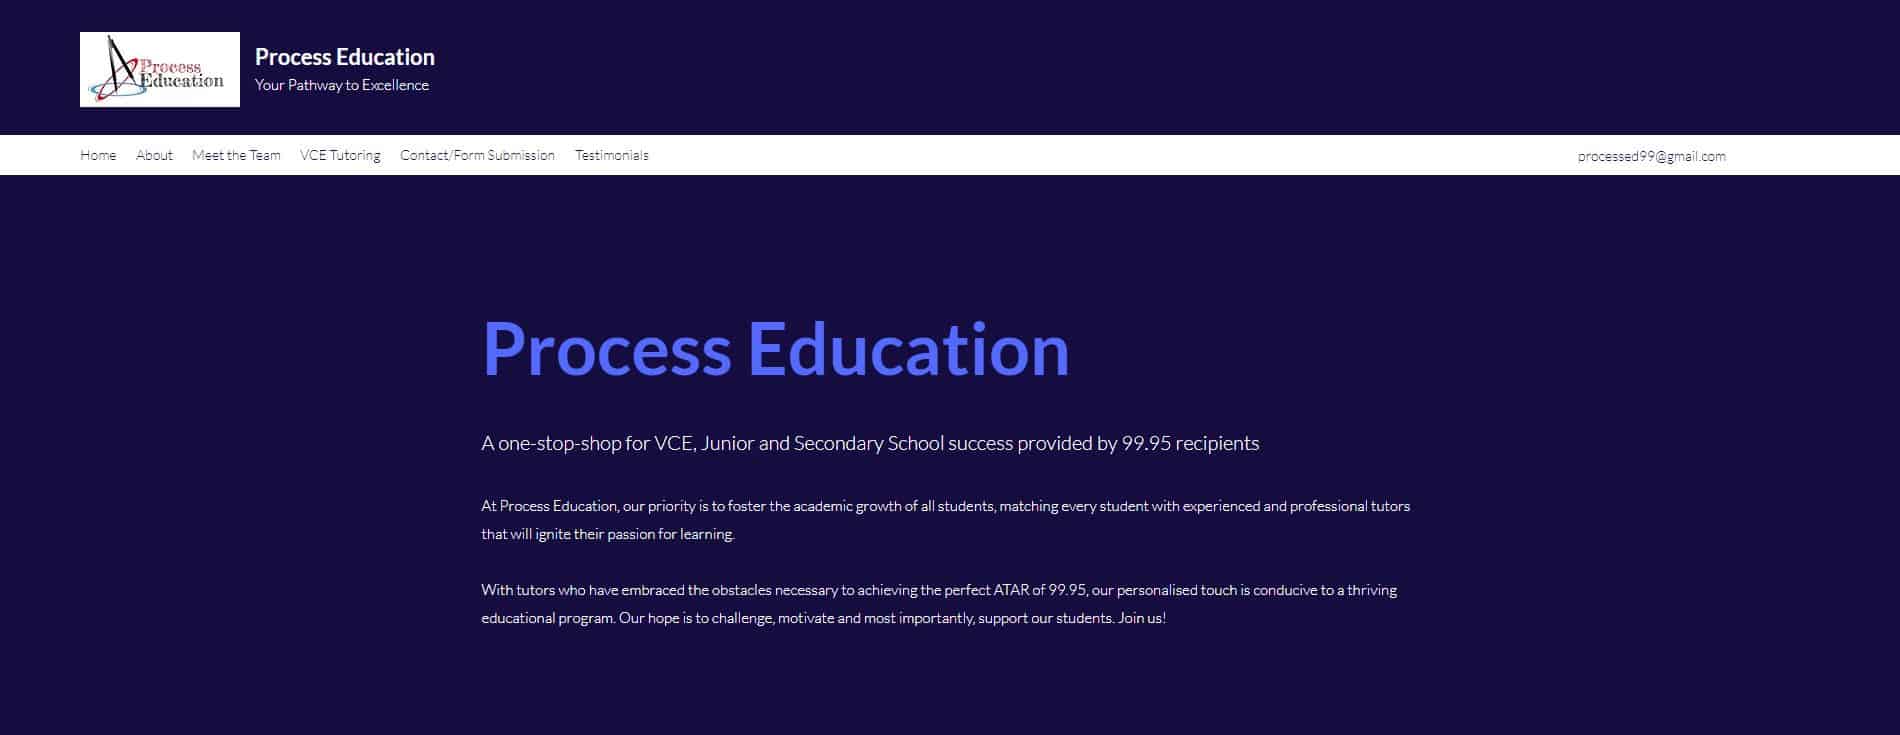 process education vce tutors melbourne